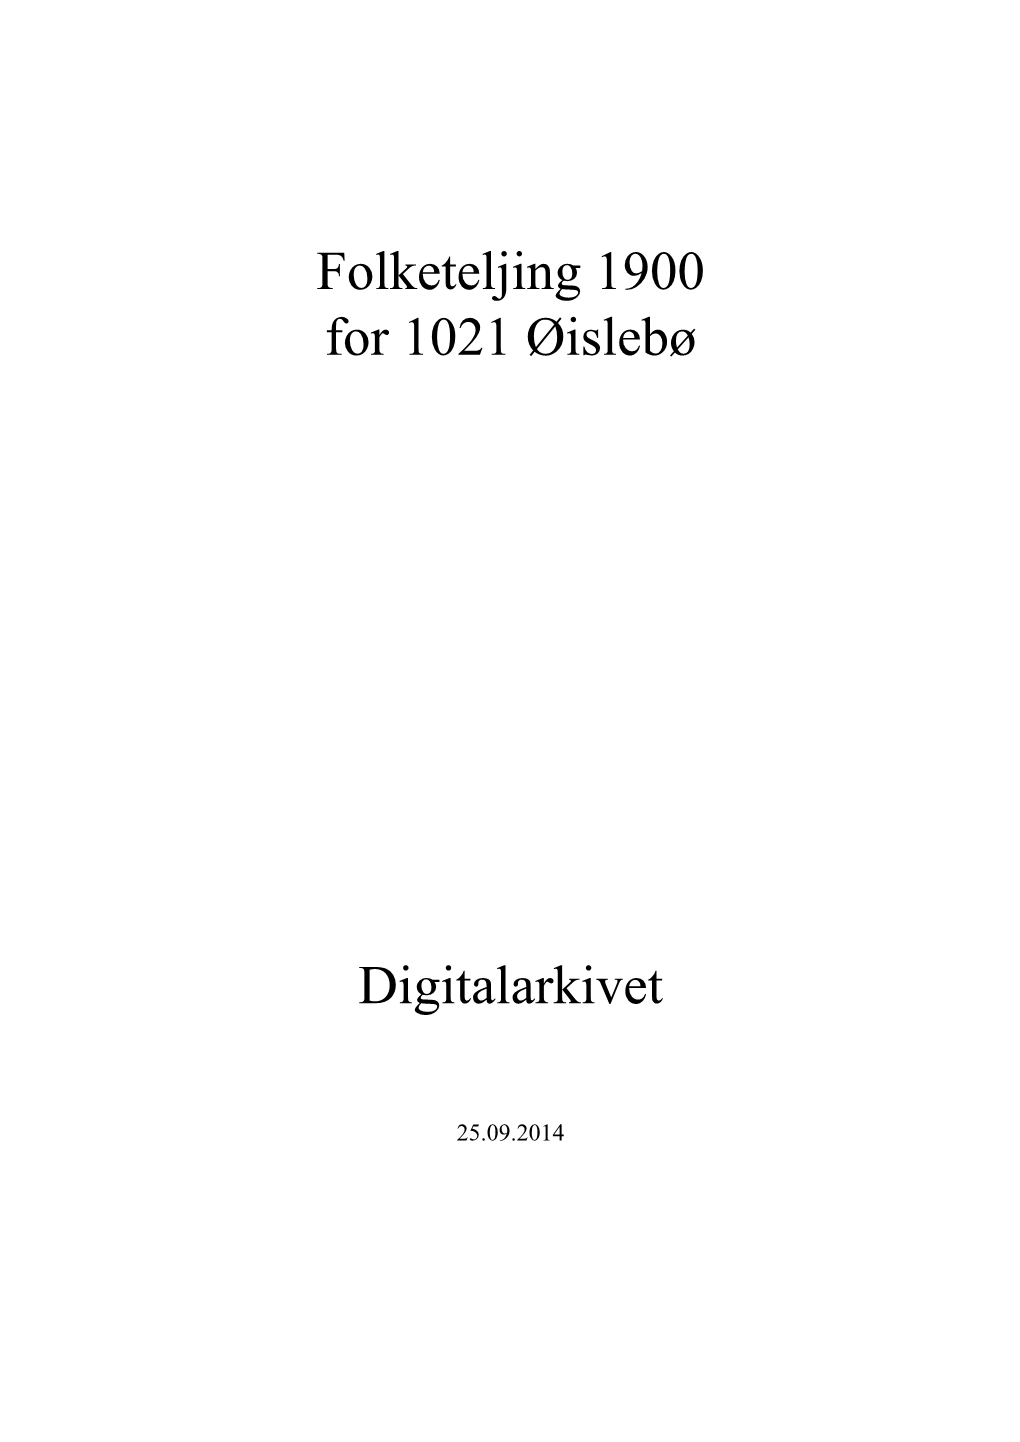 Folketeljing 1900 for 1021 Øislebø Digitalarkivet